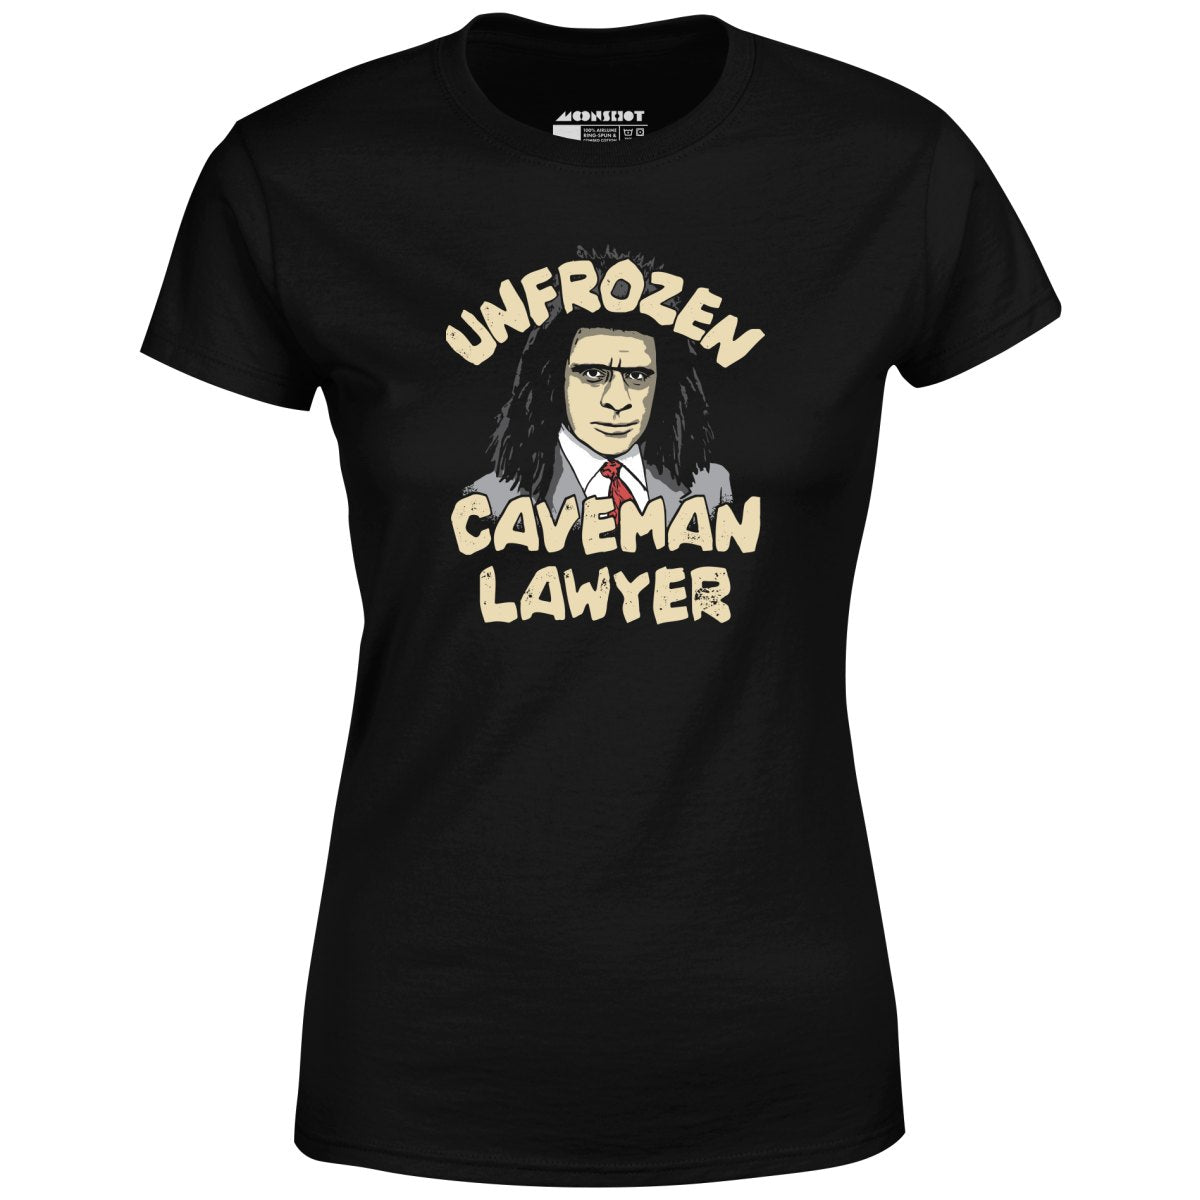 Unfrozen Caveman Lawyer - Women's T-Shirt